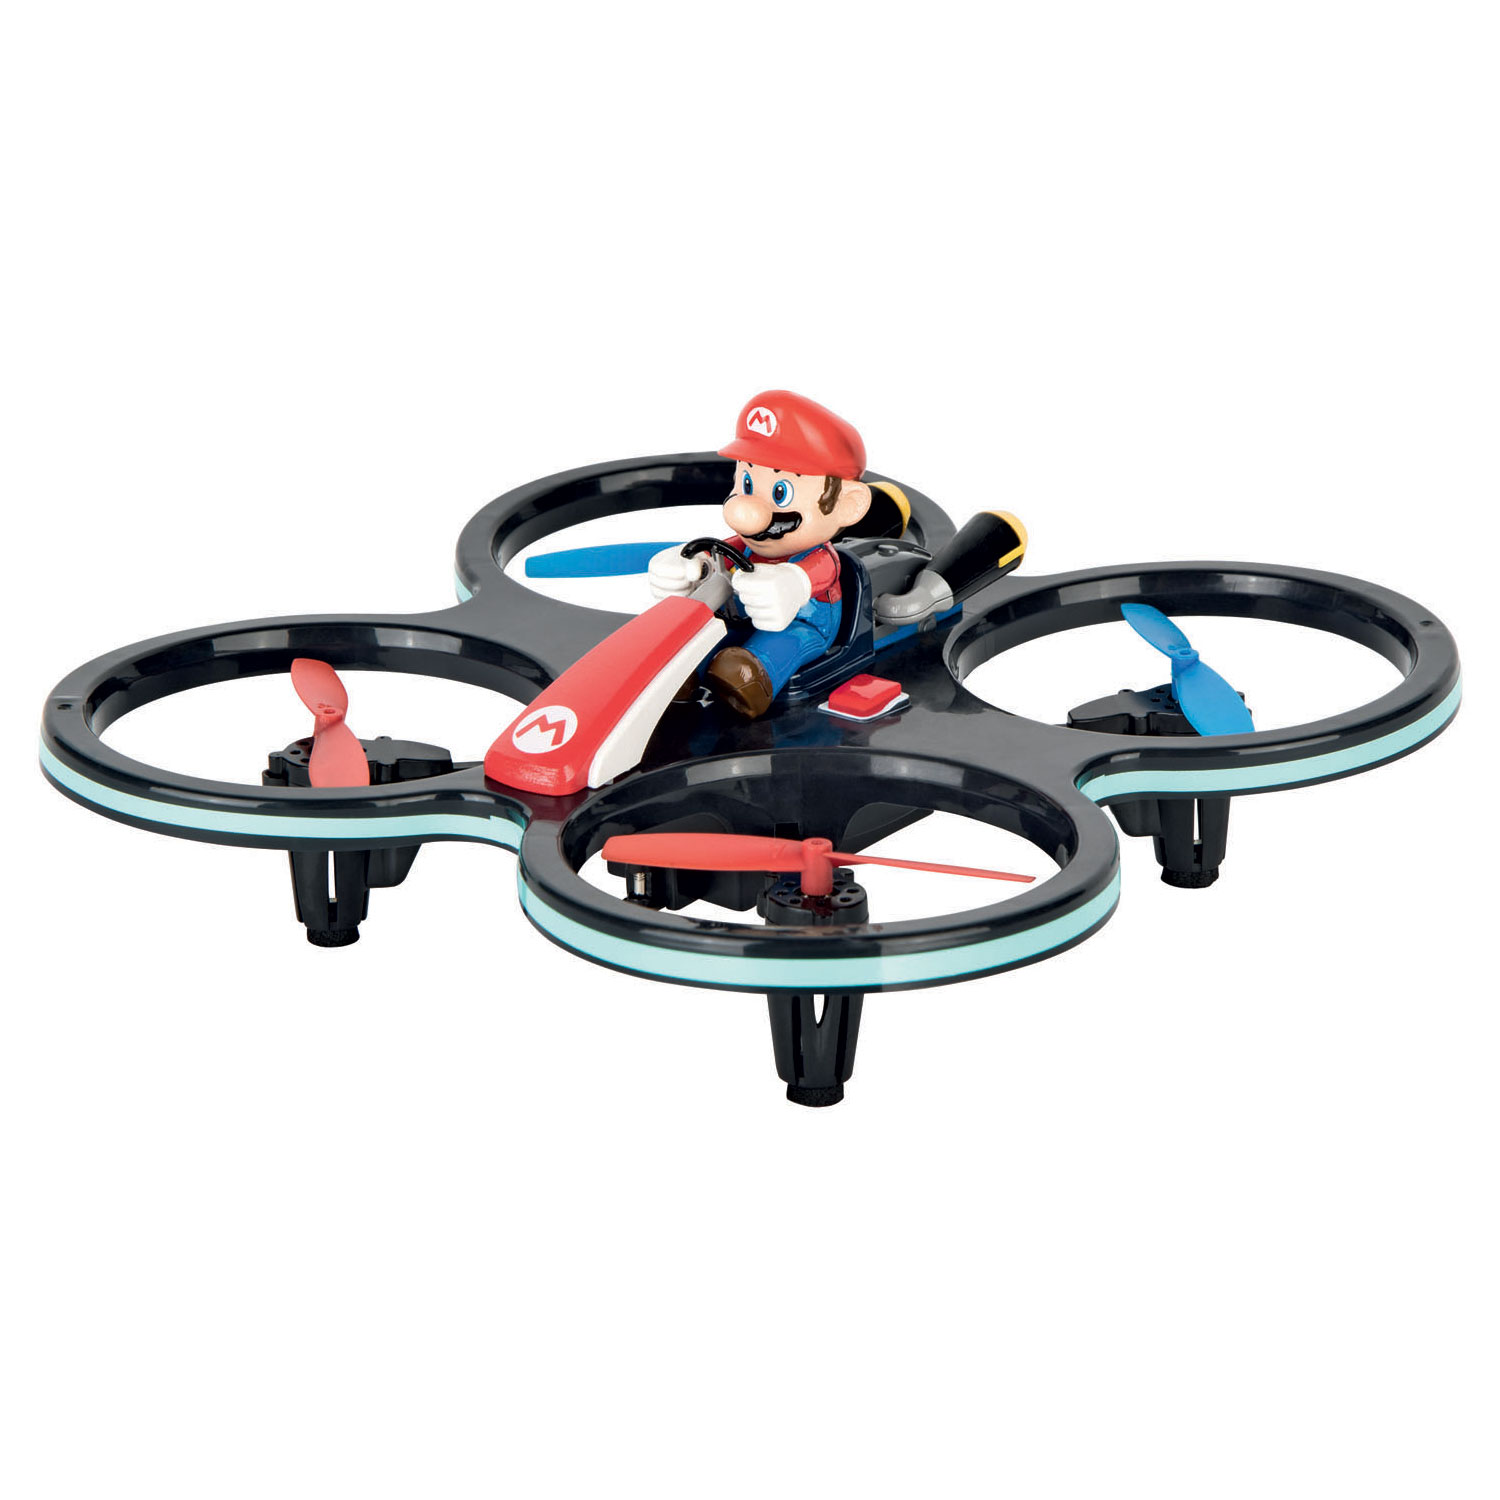 Super Mario Mini Drone! Carrera Rc. 